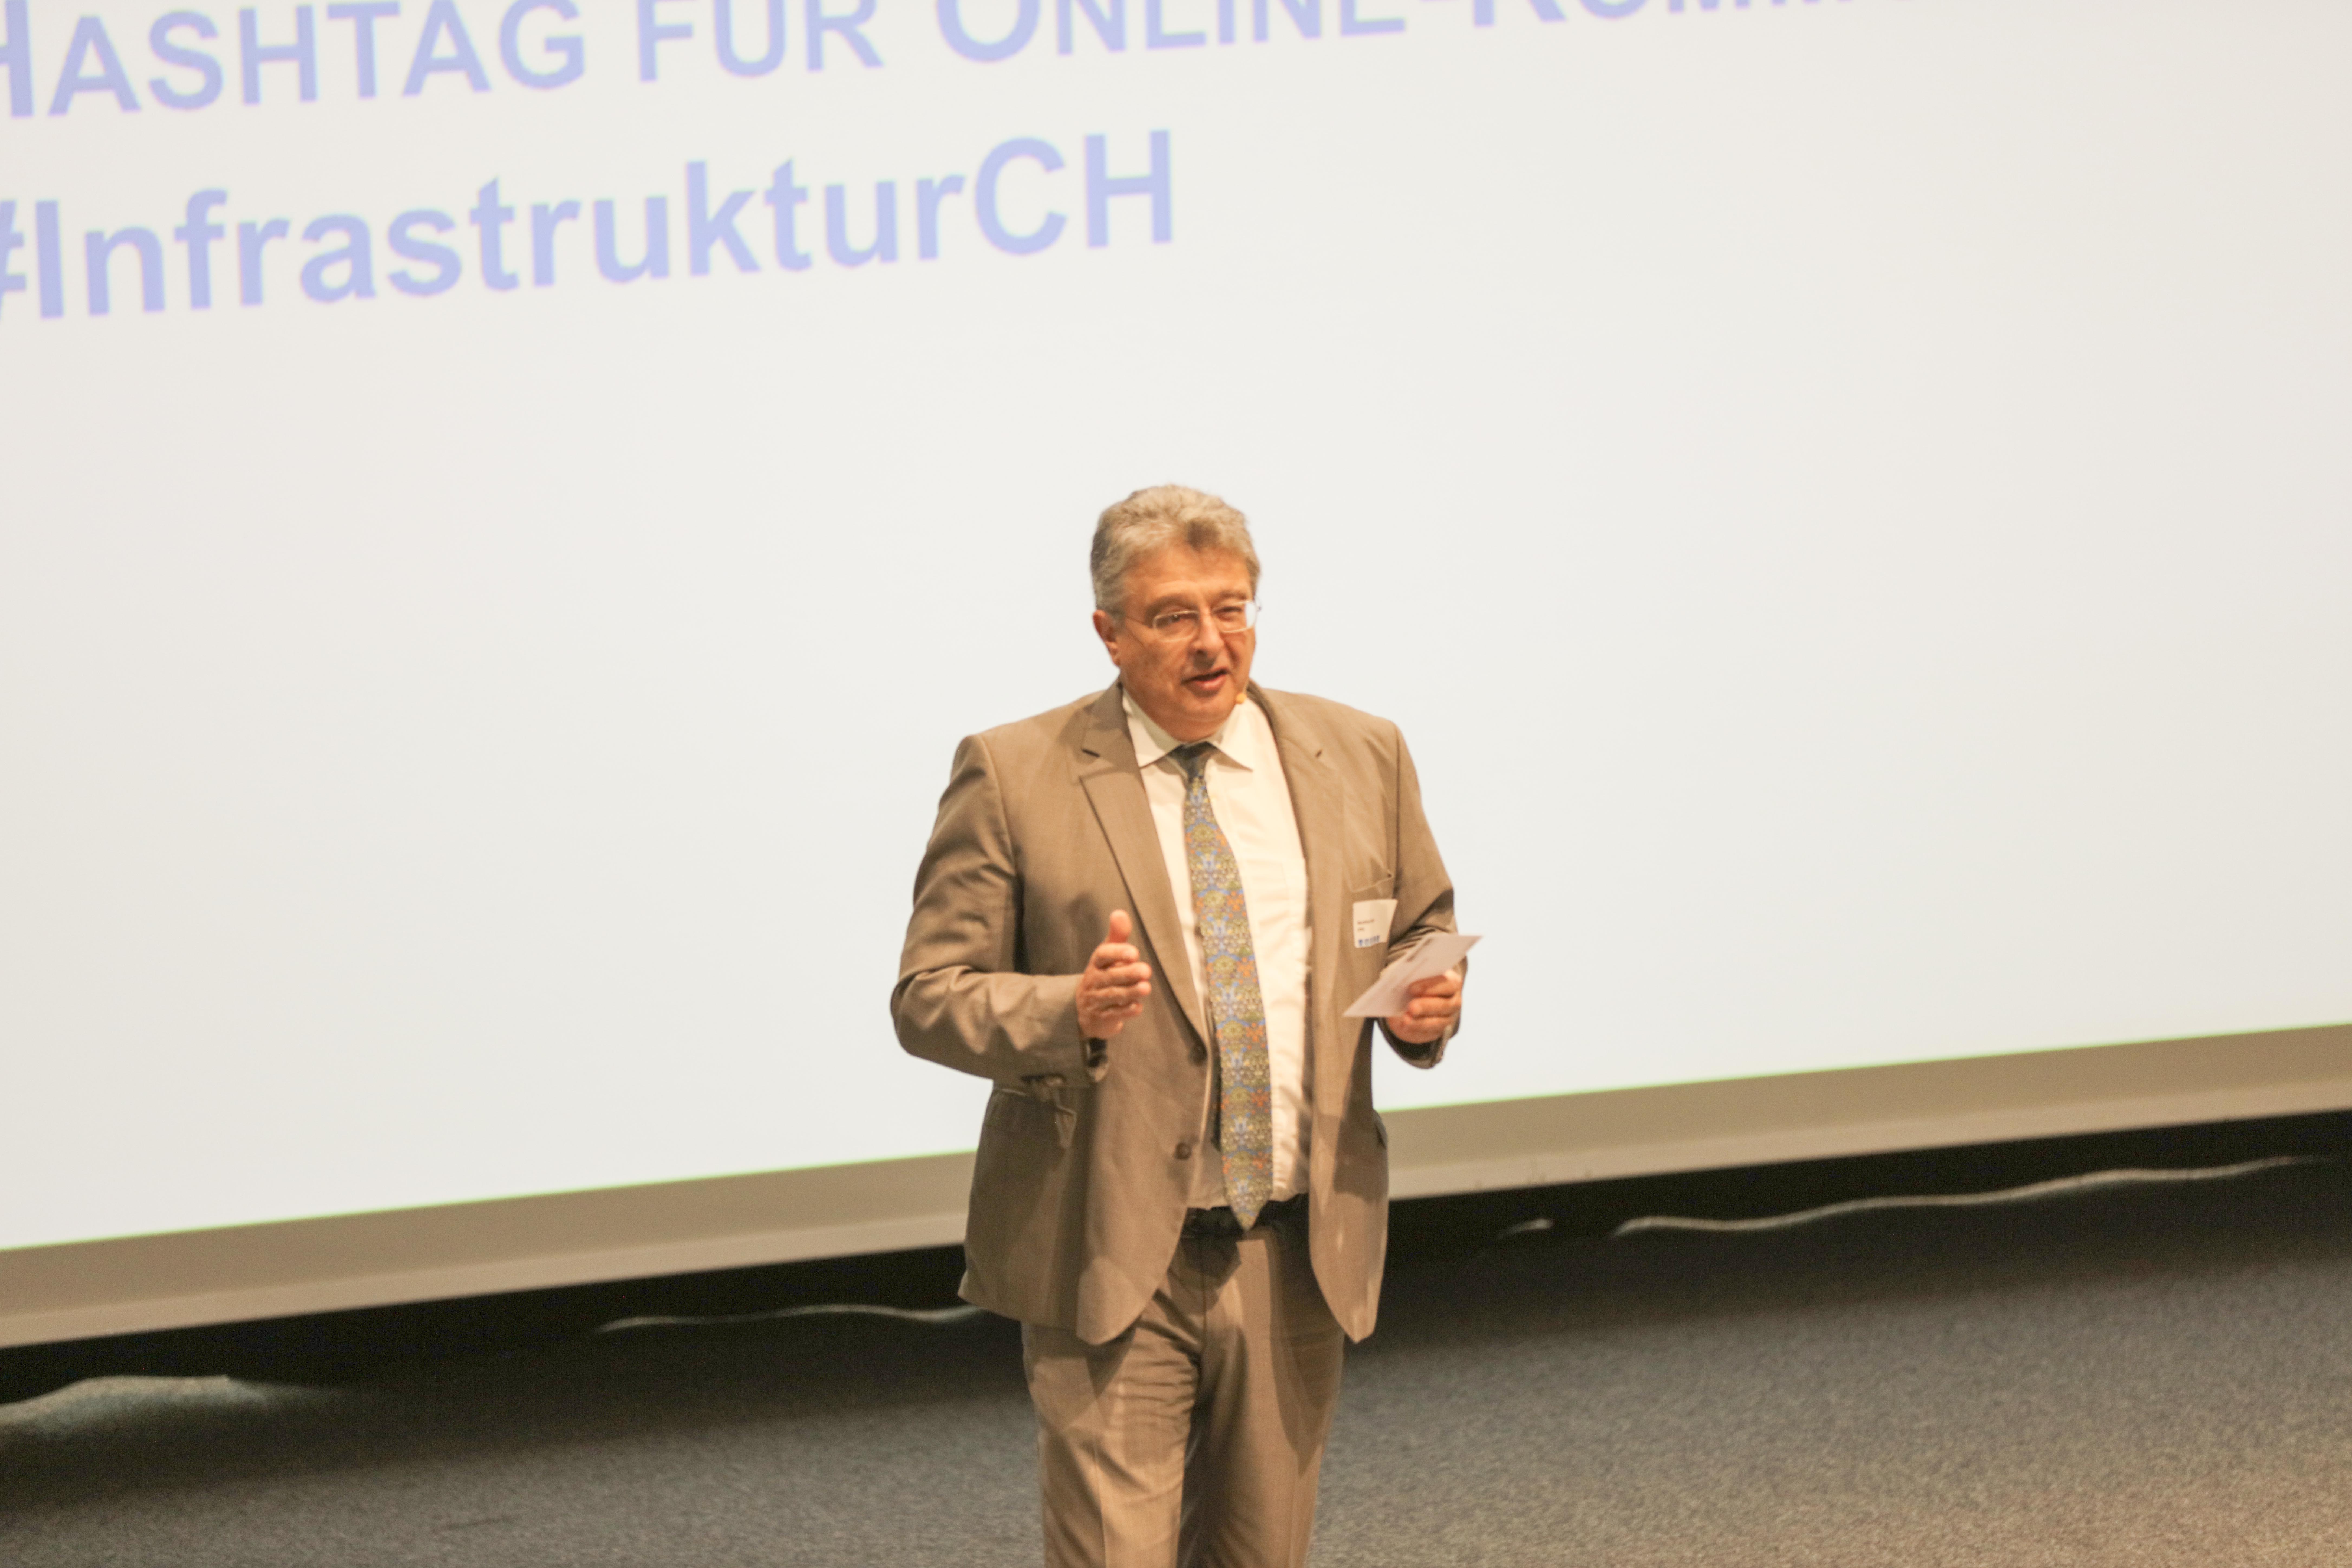 Introduction: Professeur Dr Matthias Finger, chaire de Management of Network Industries, EPFL